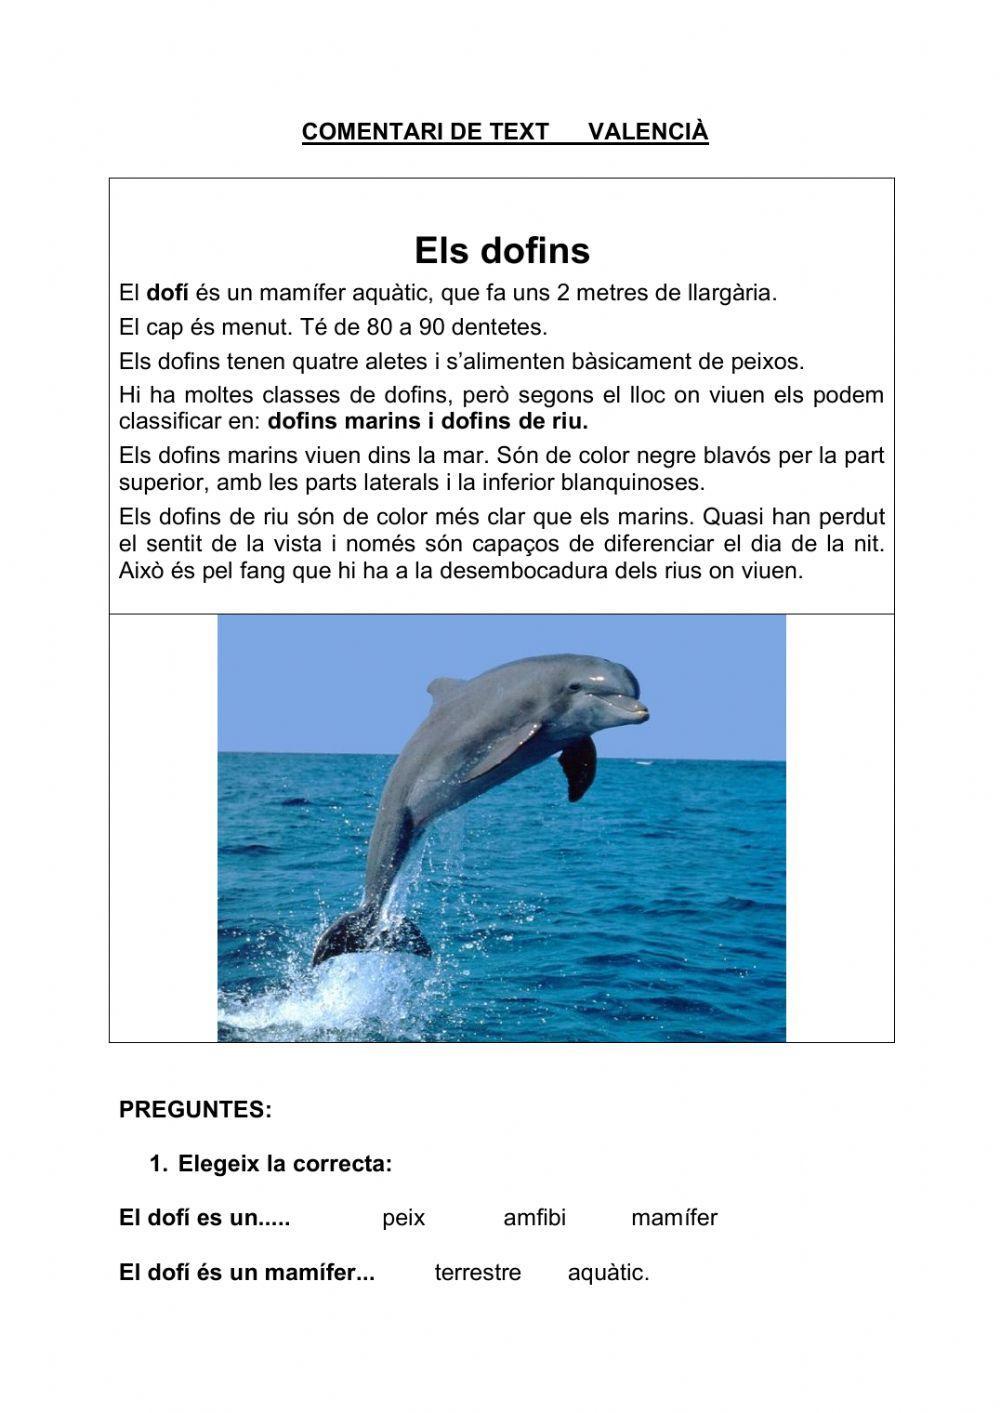 Els dofins